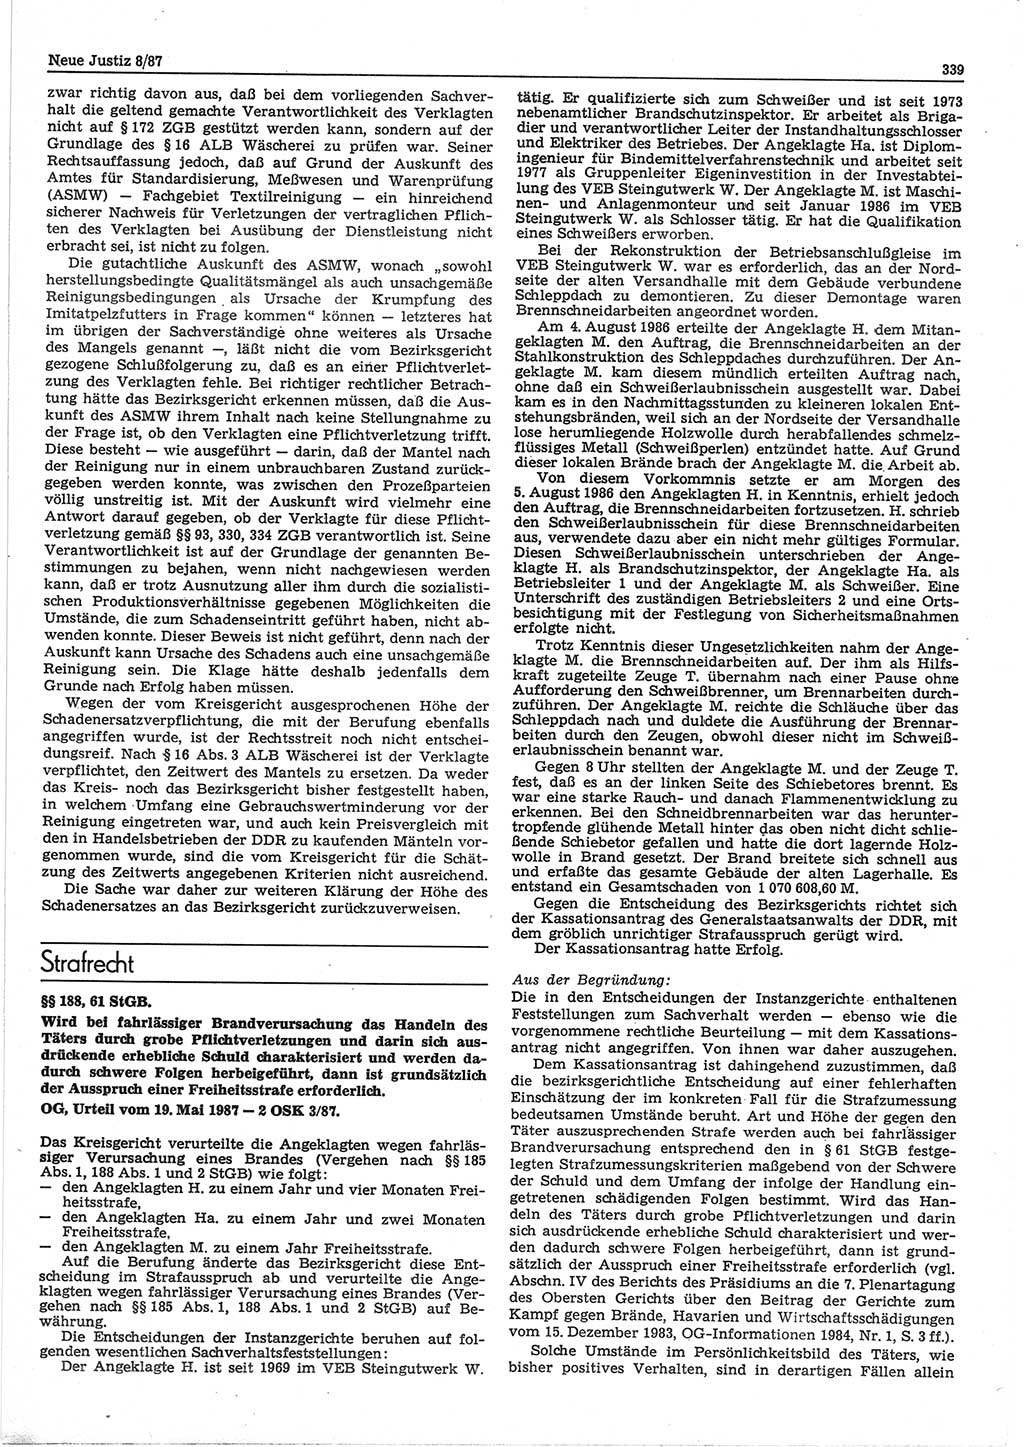 Neue Justiz (NJ), Zeitschrift für sozialistisches Recht und Gesetzlichkeit [Deutsche Demokratische Republik (DDR)], 41. Jahrgang 1987, Seite 339 (NJ DDR 1987, S. 339)